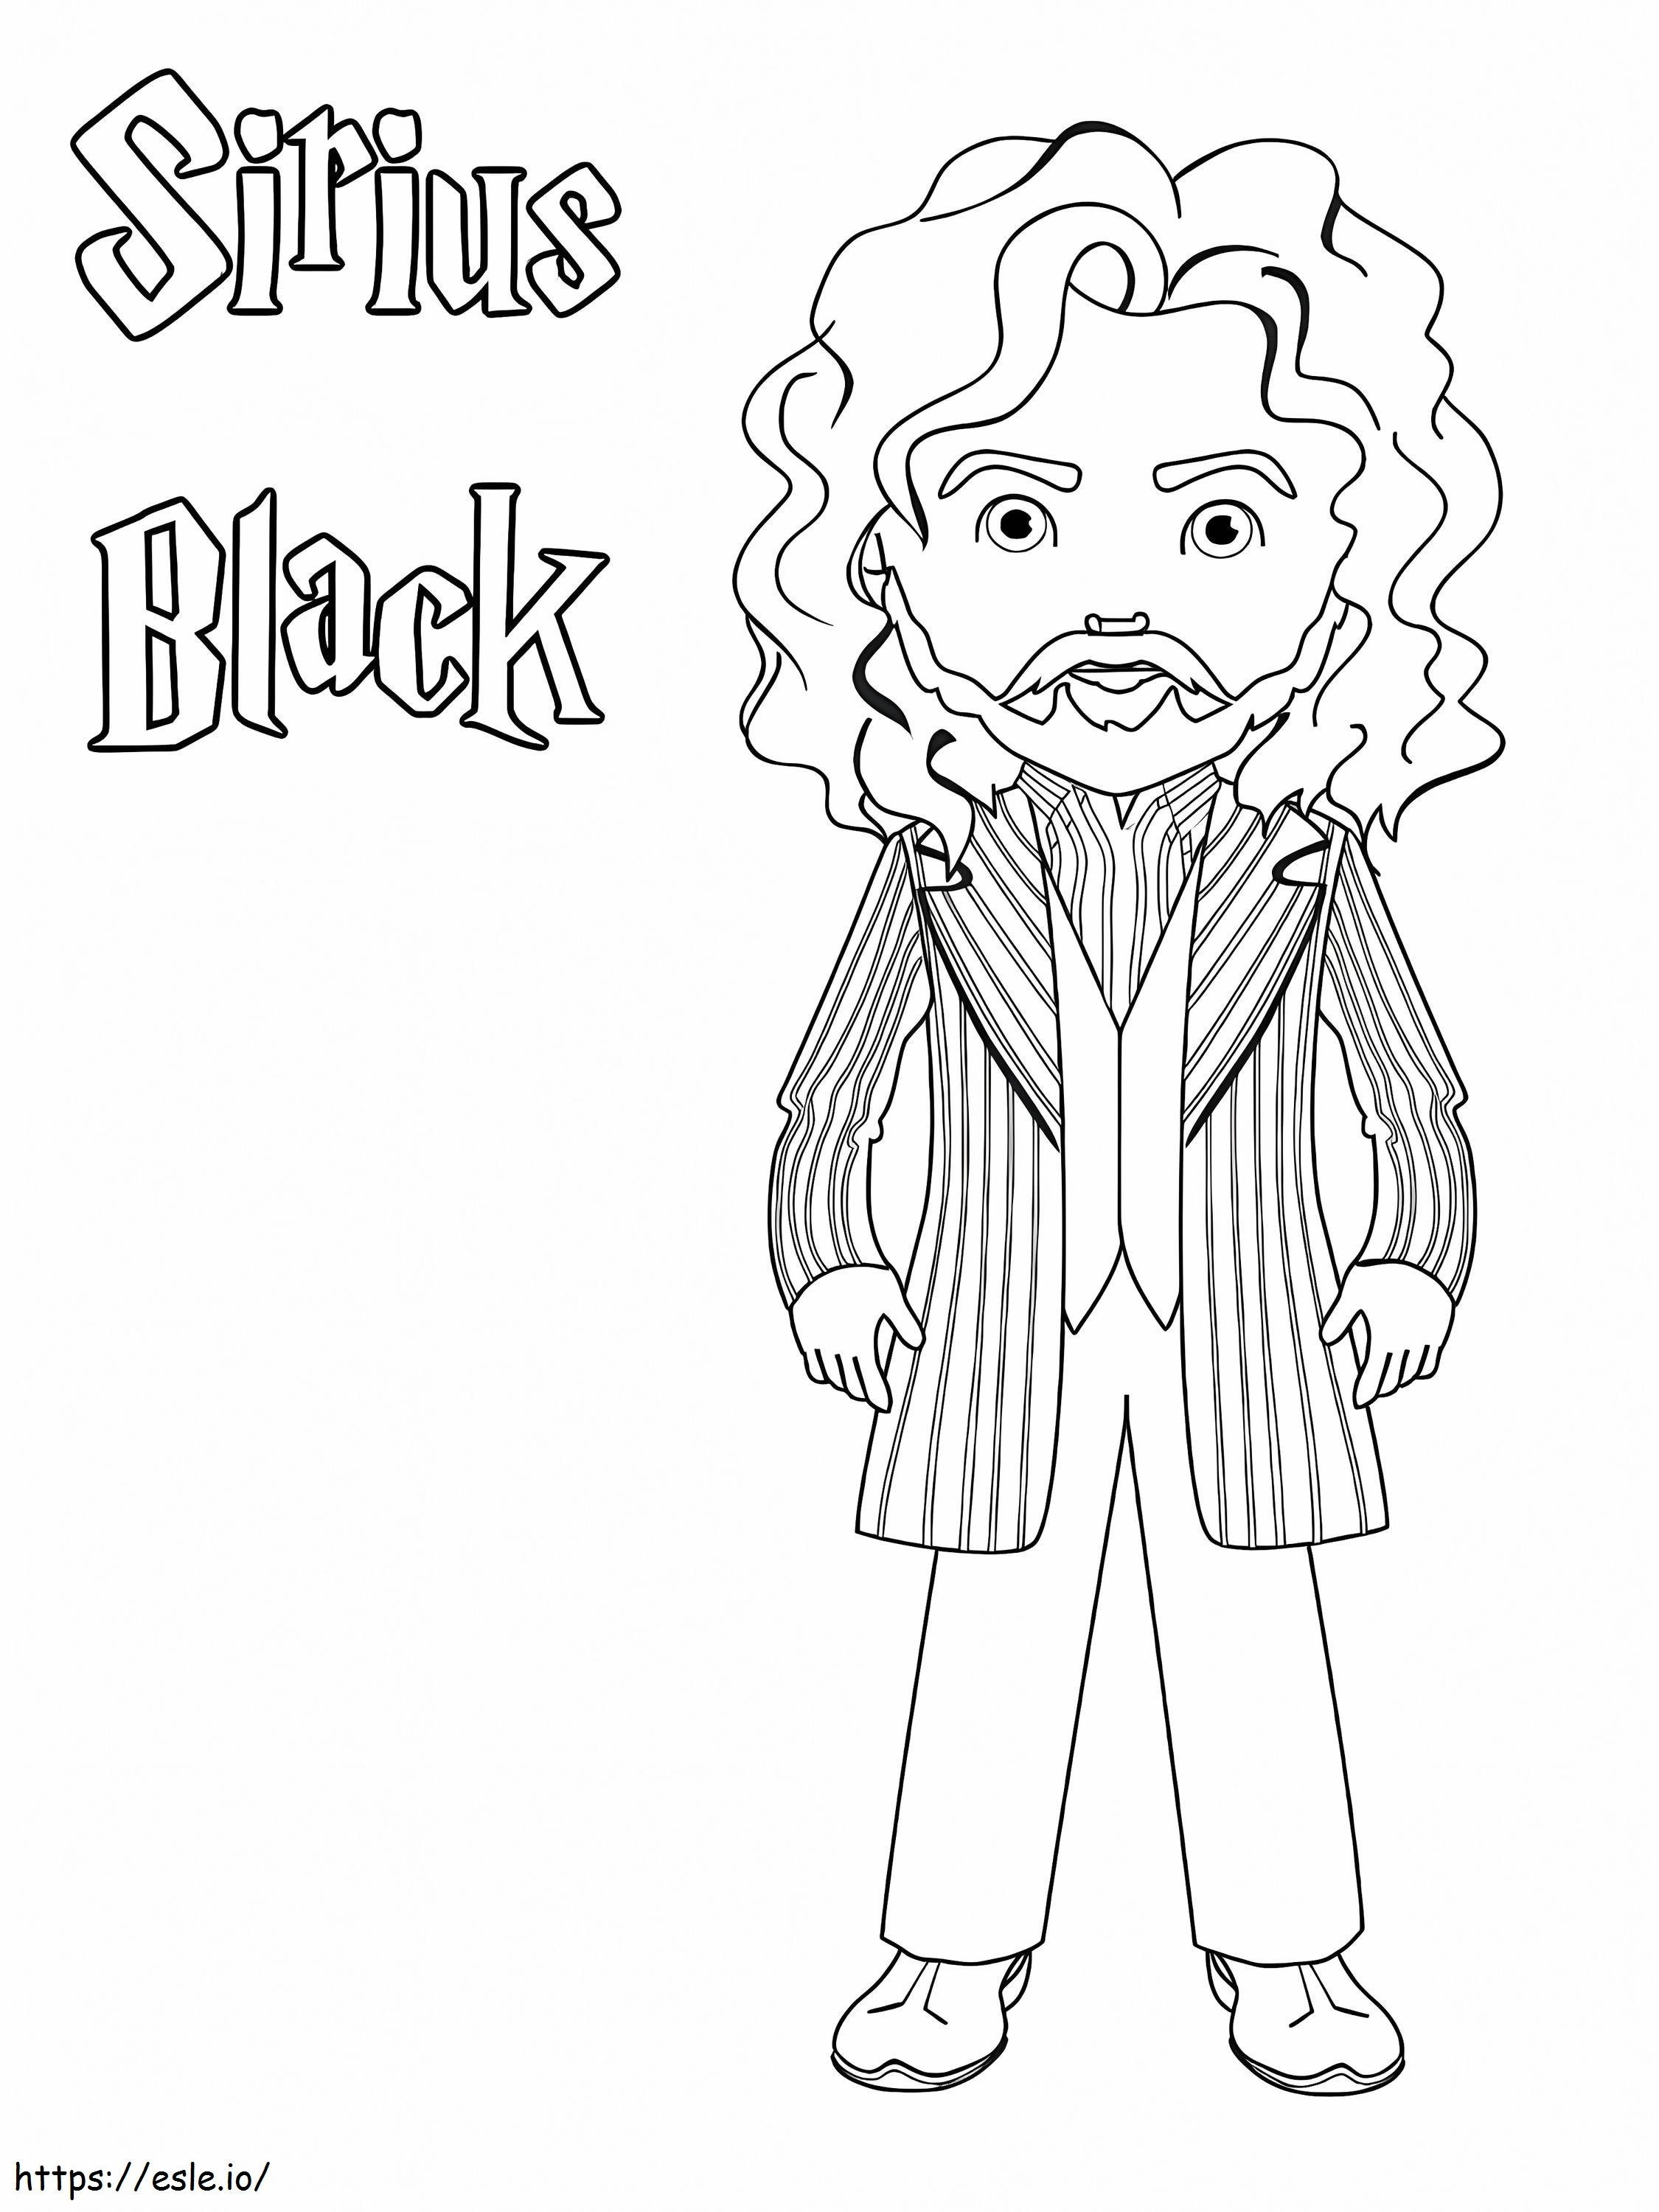 Sirius Black coloring page